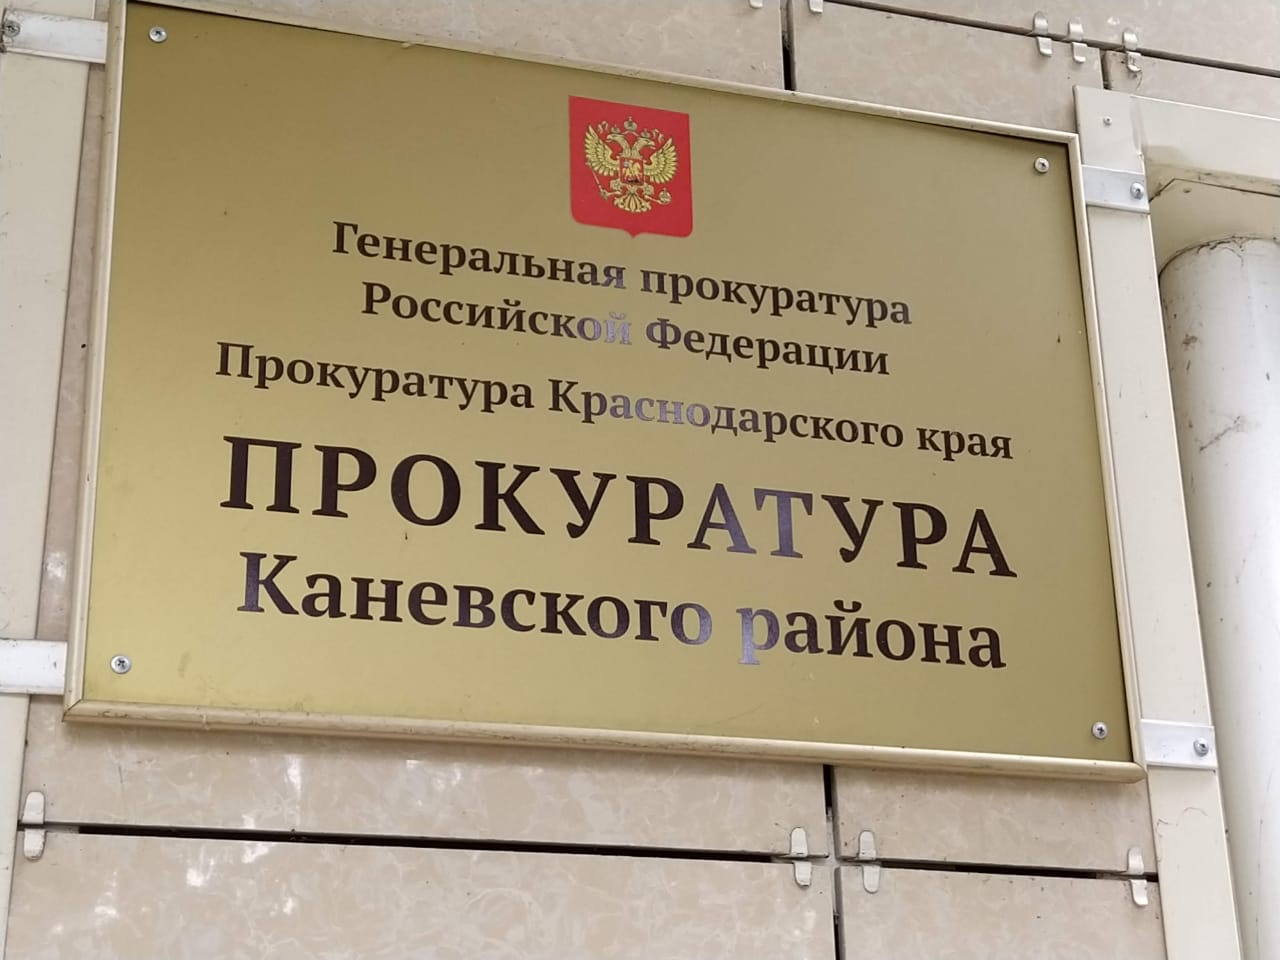 Прокуратурой Каневского района утверждено обвинительное заключение в отношении потребителя наркотиков